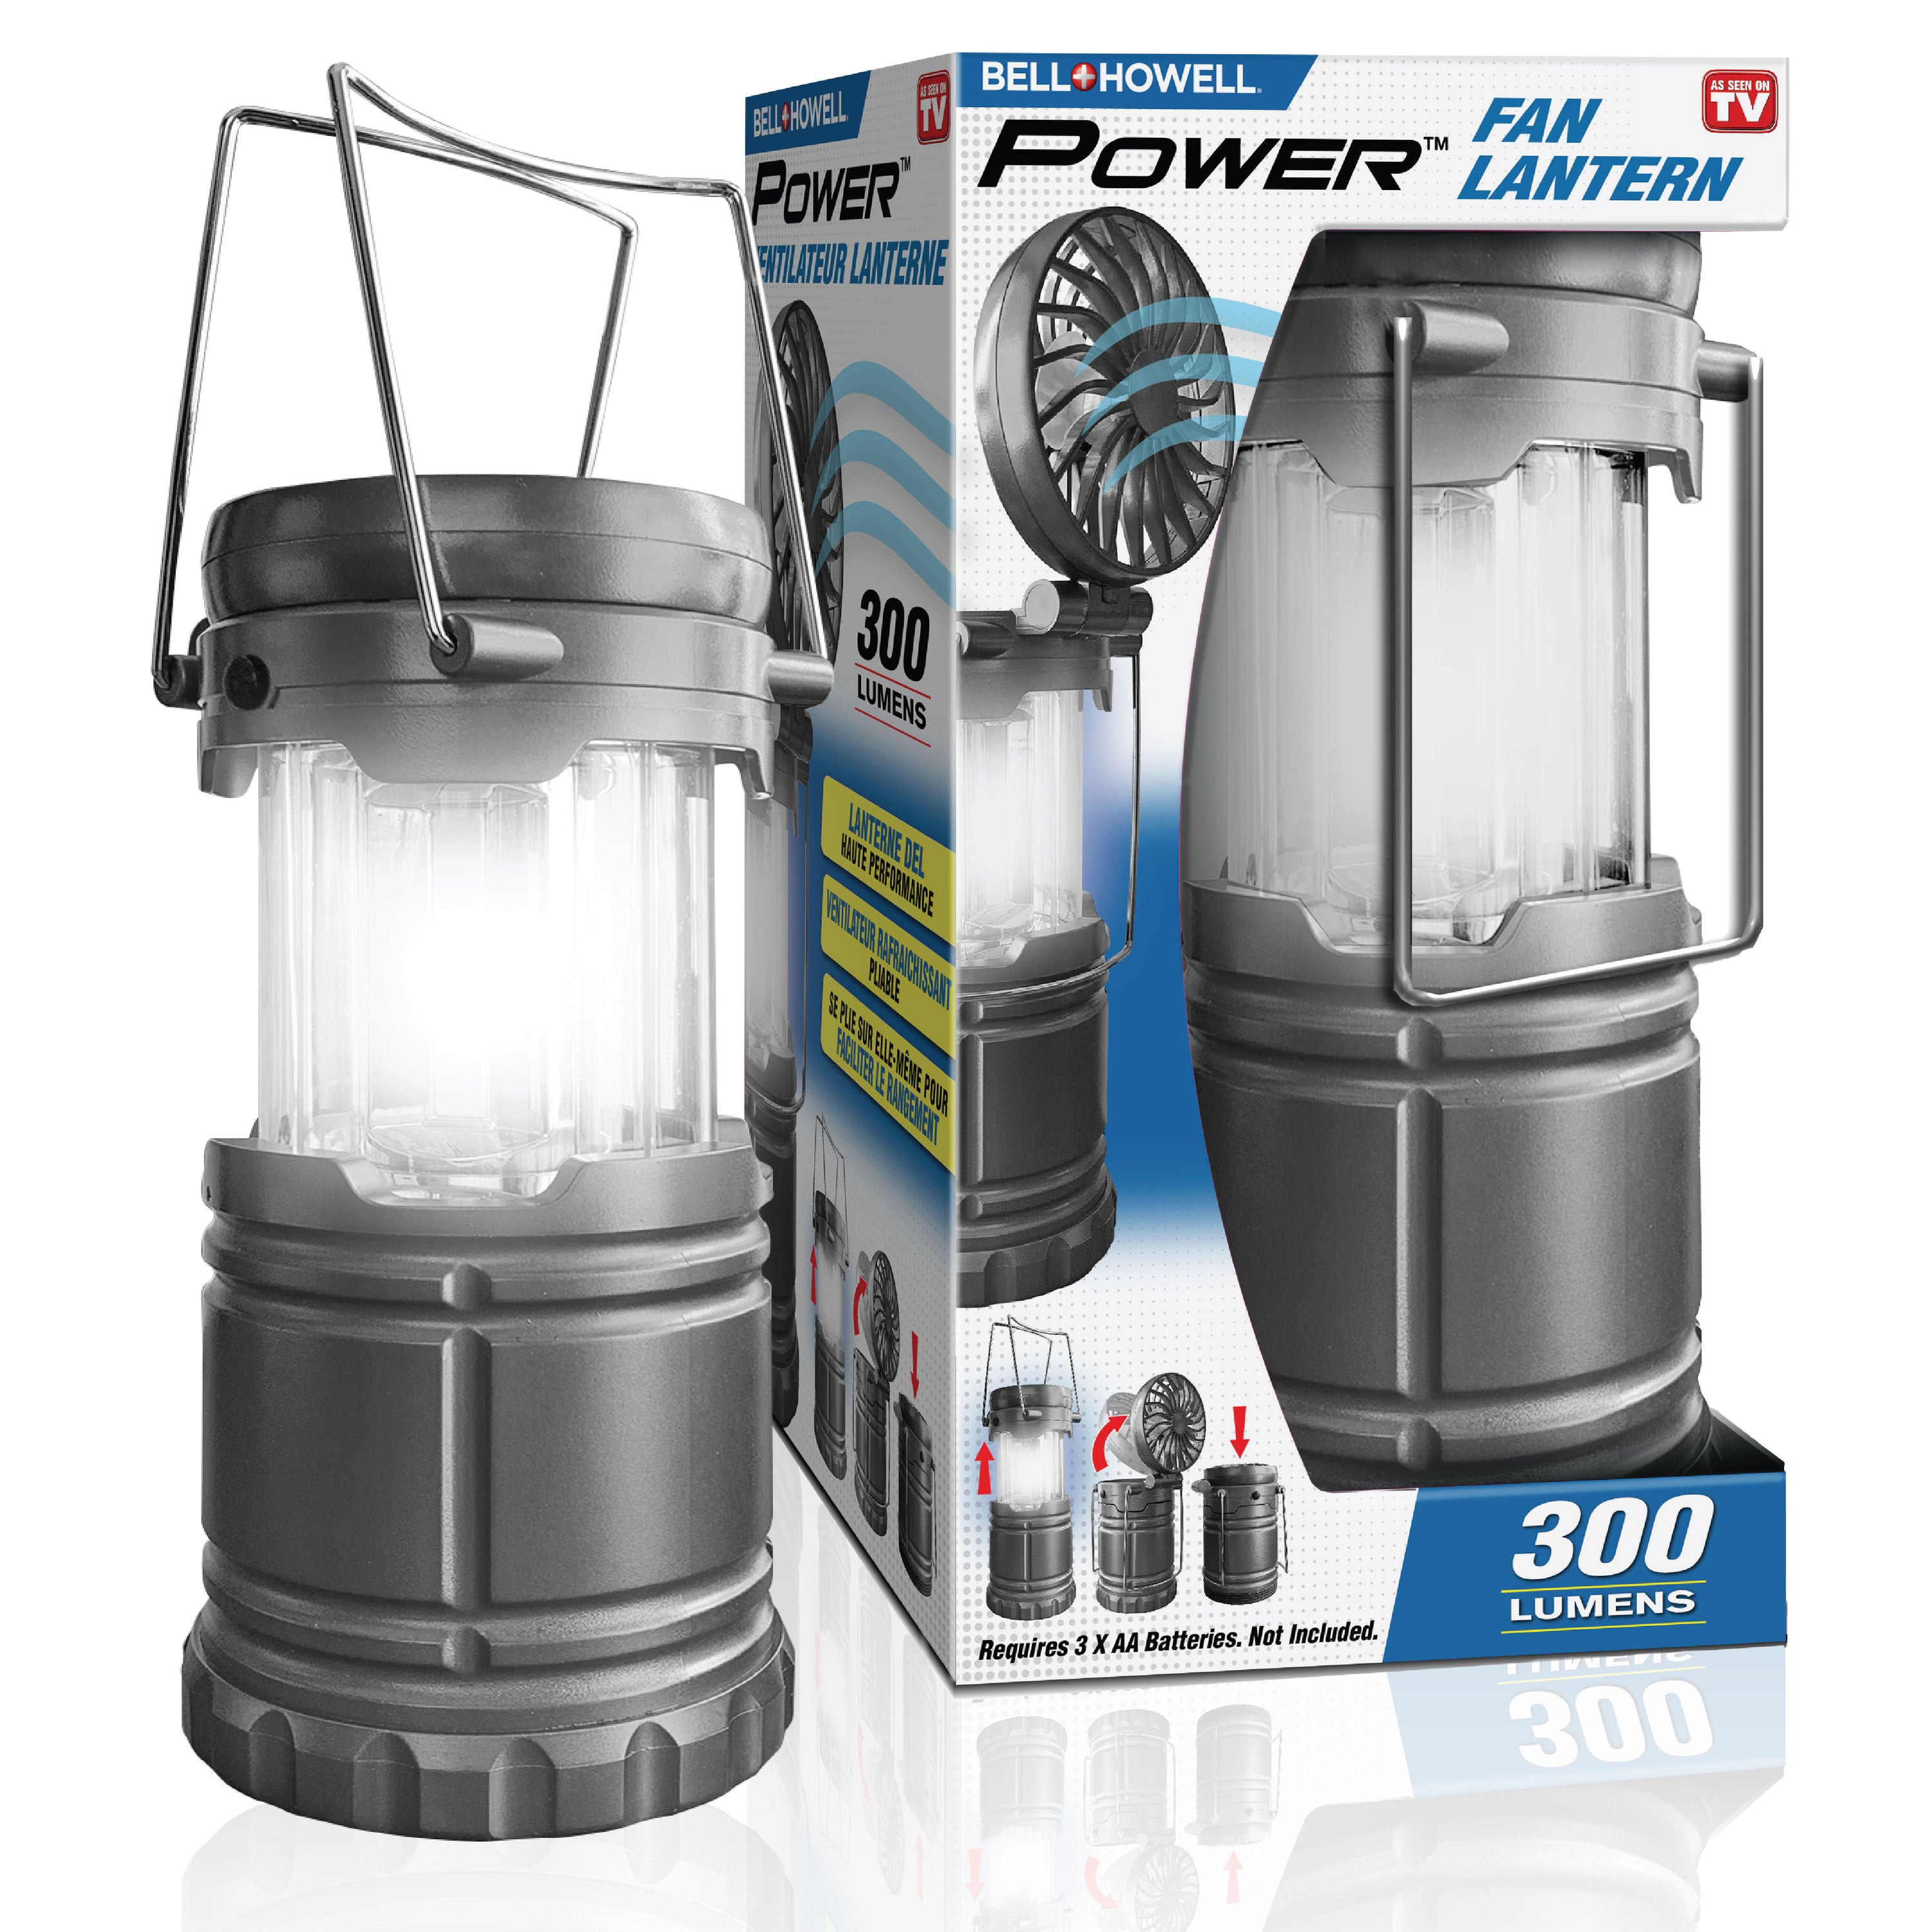 Bell + Howell Power Pro Fan Lantern